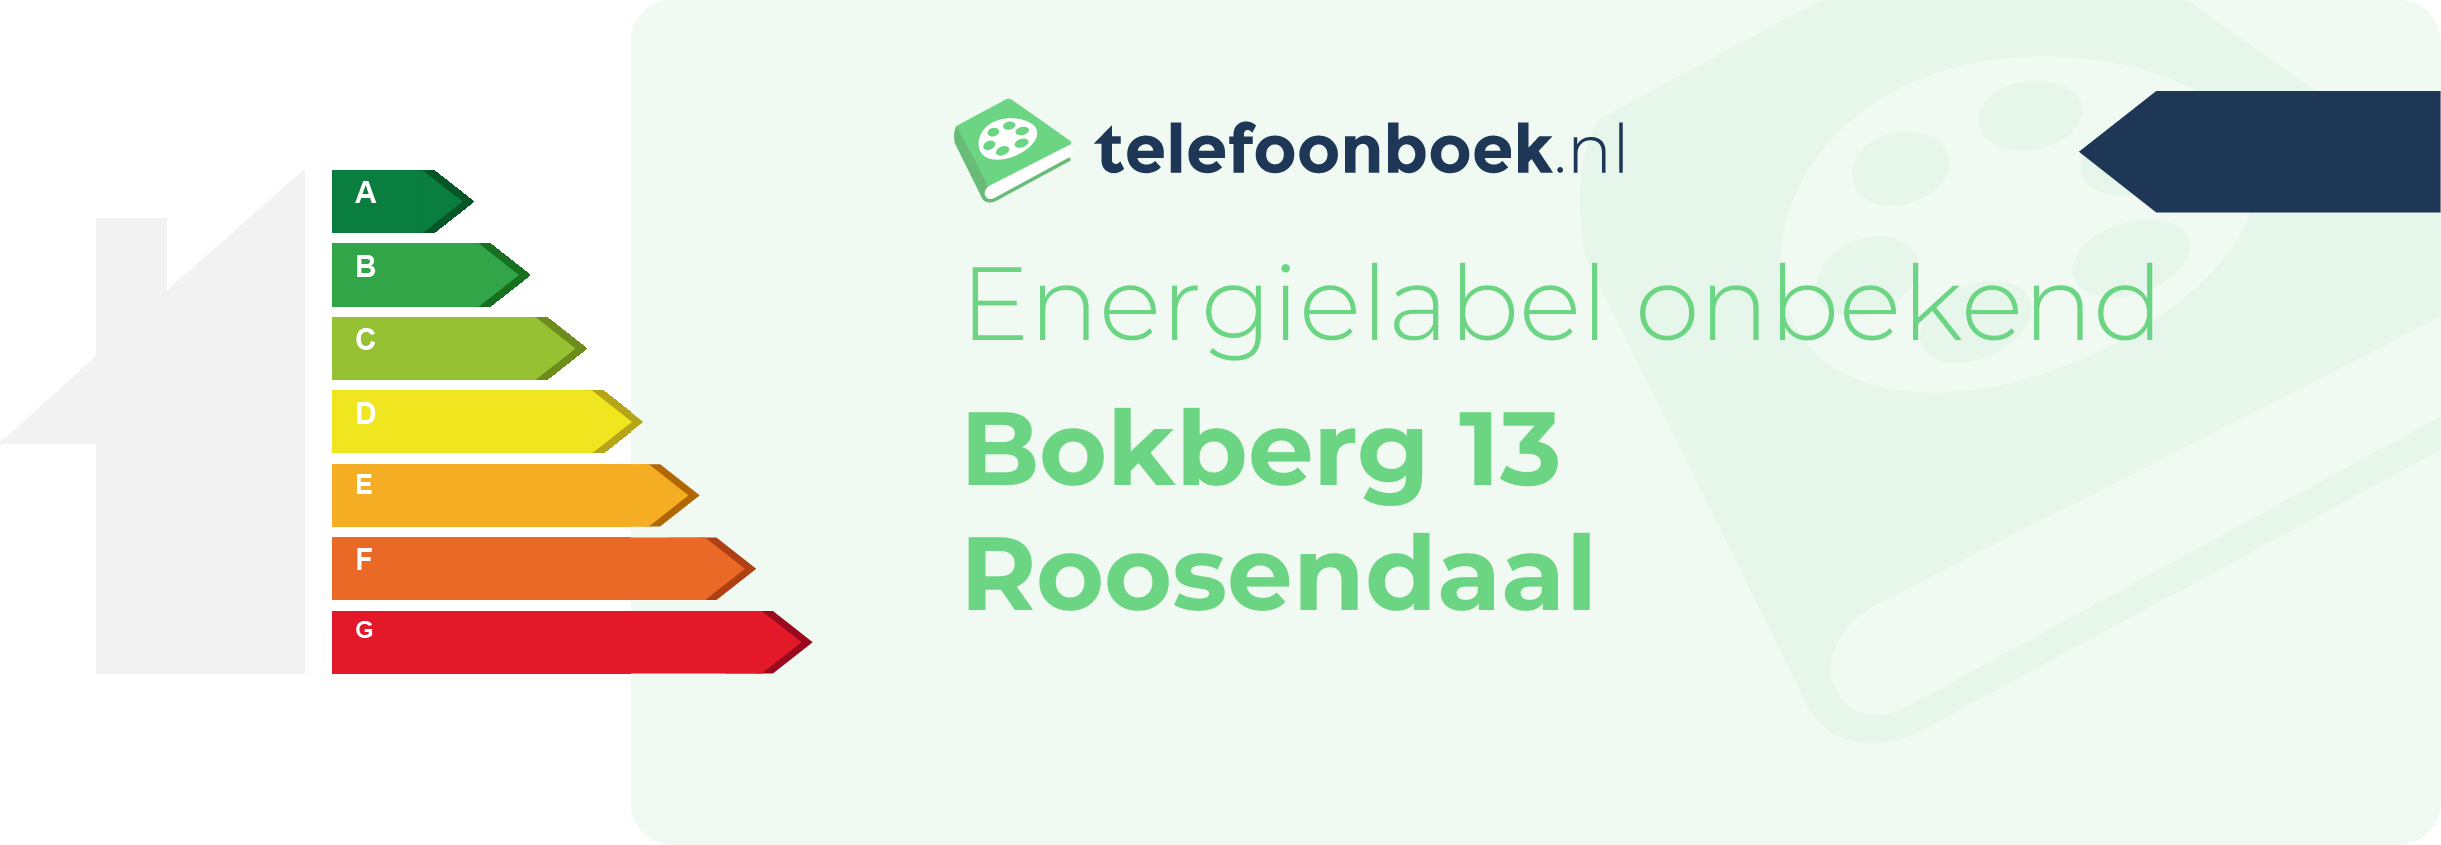 Energielabel Bokberg 13 Roosendaal